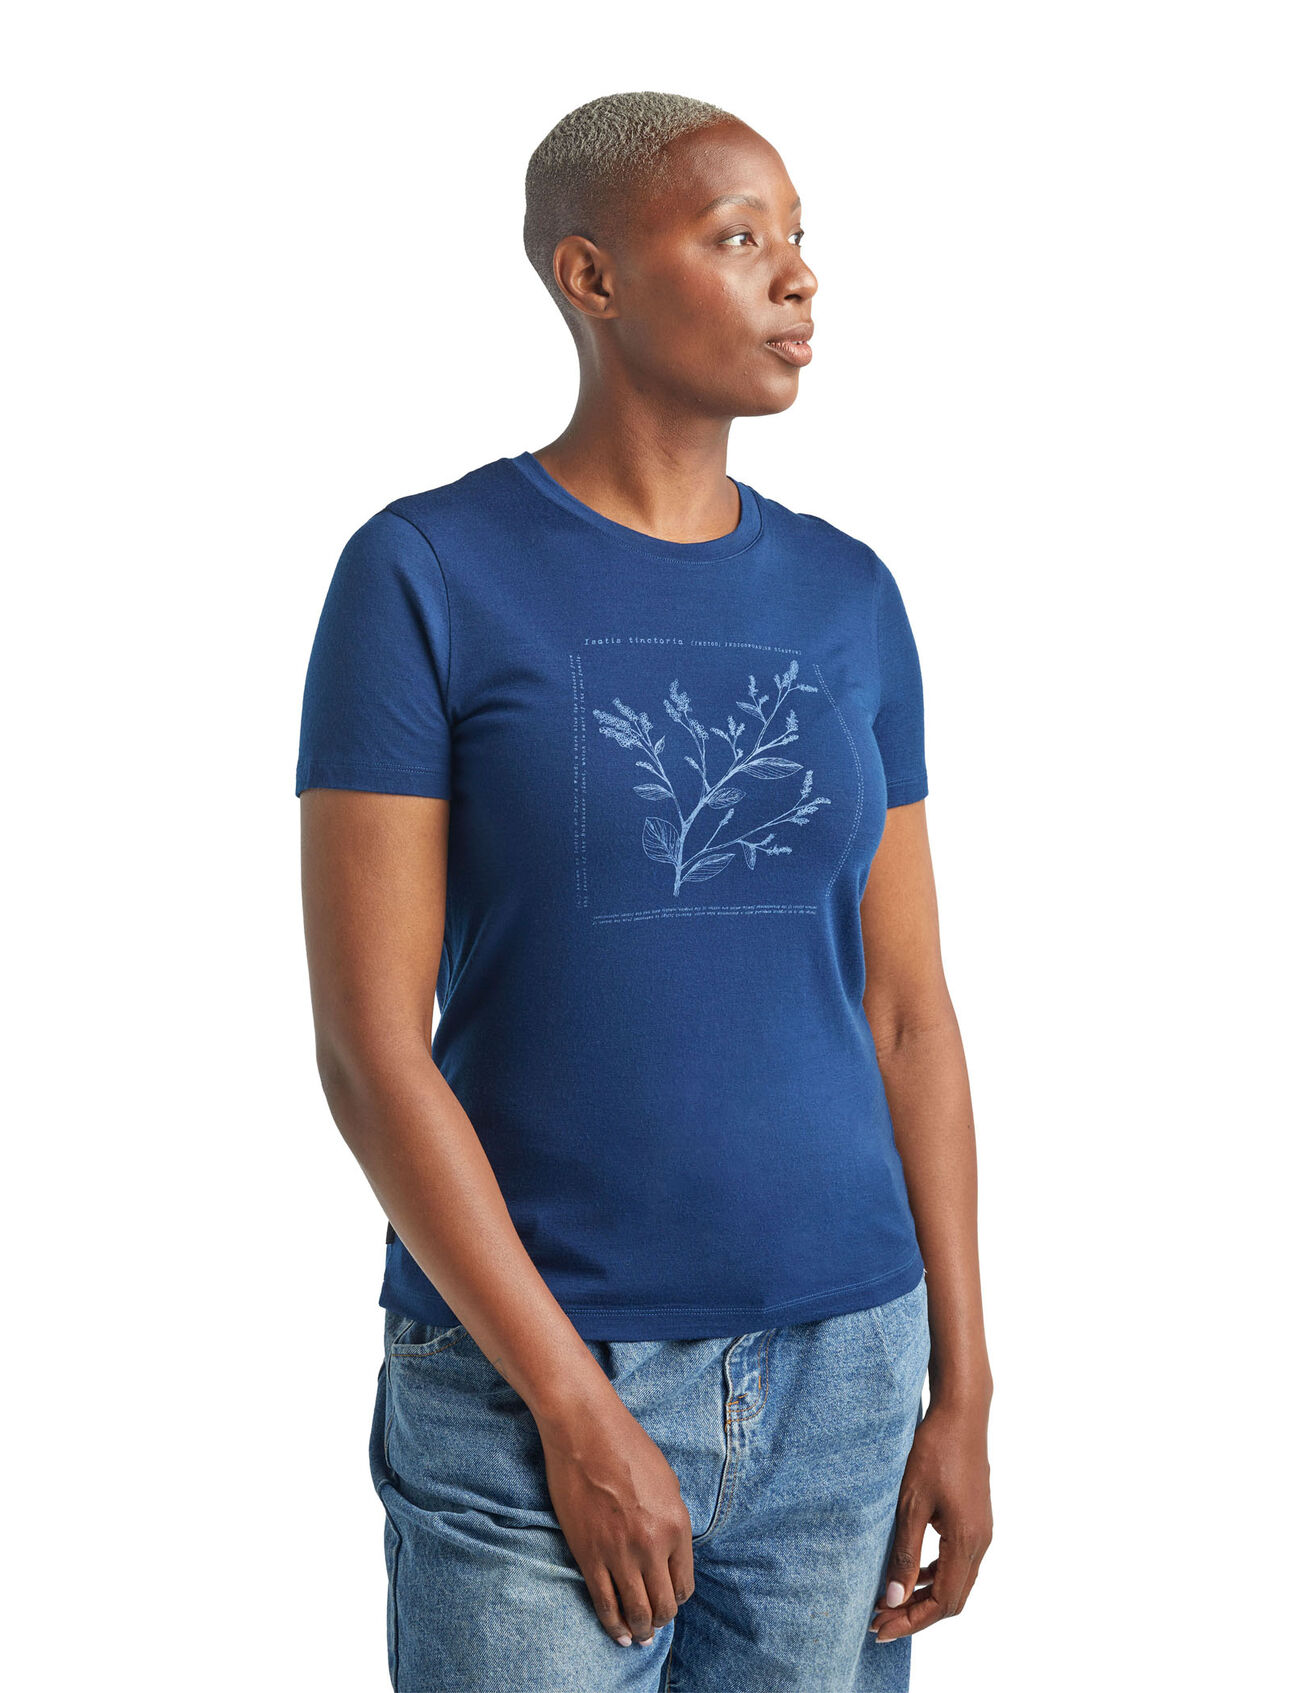 T-shirt in lana merino Nature Dye Sisao Short Sleeve Crewe Indigo